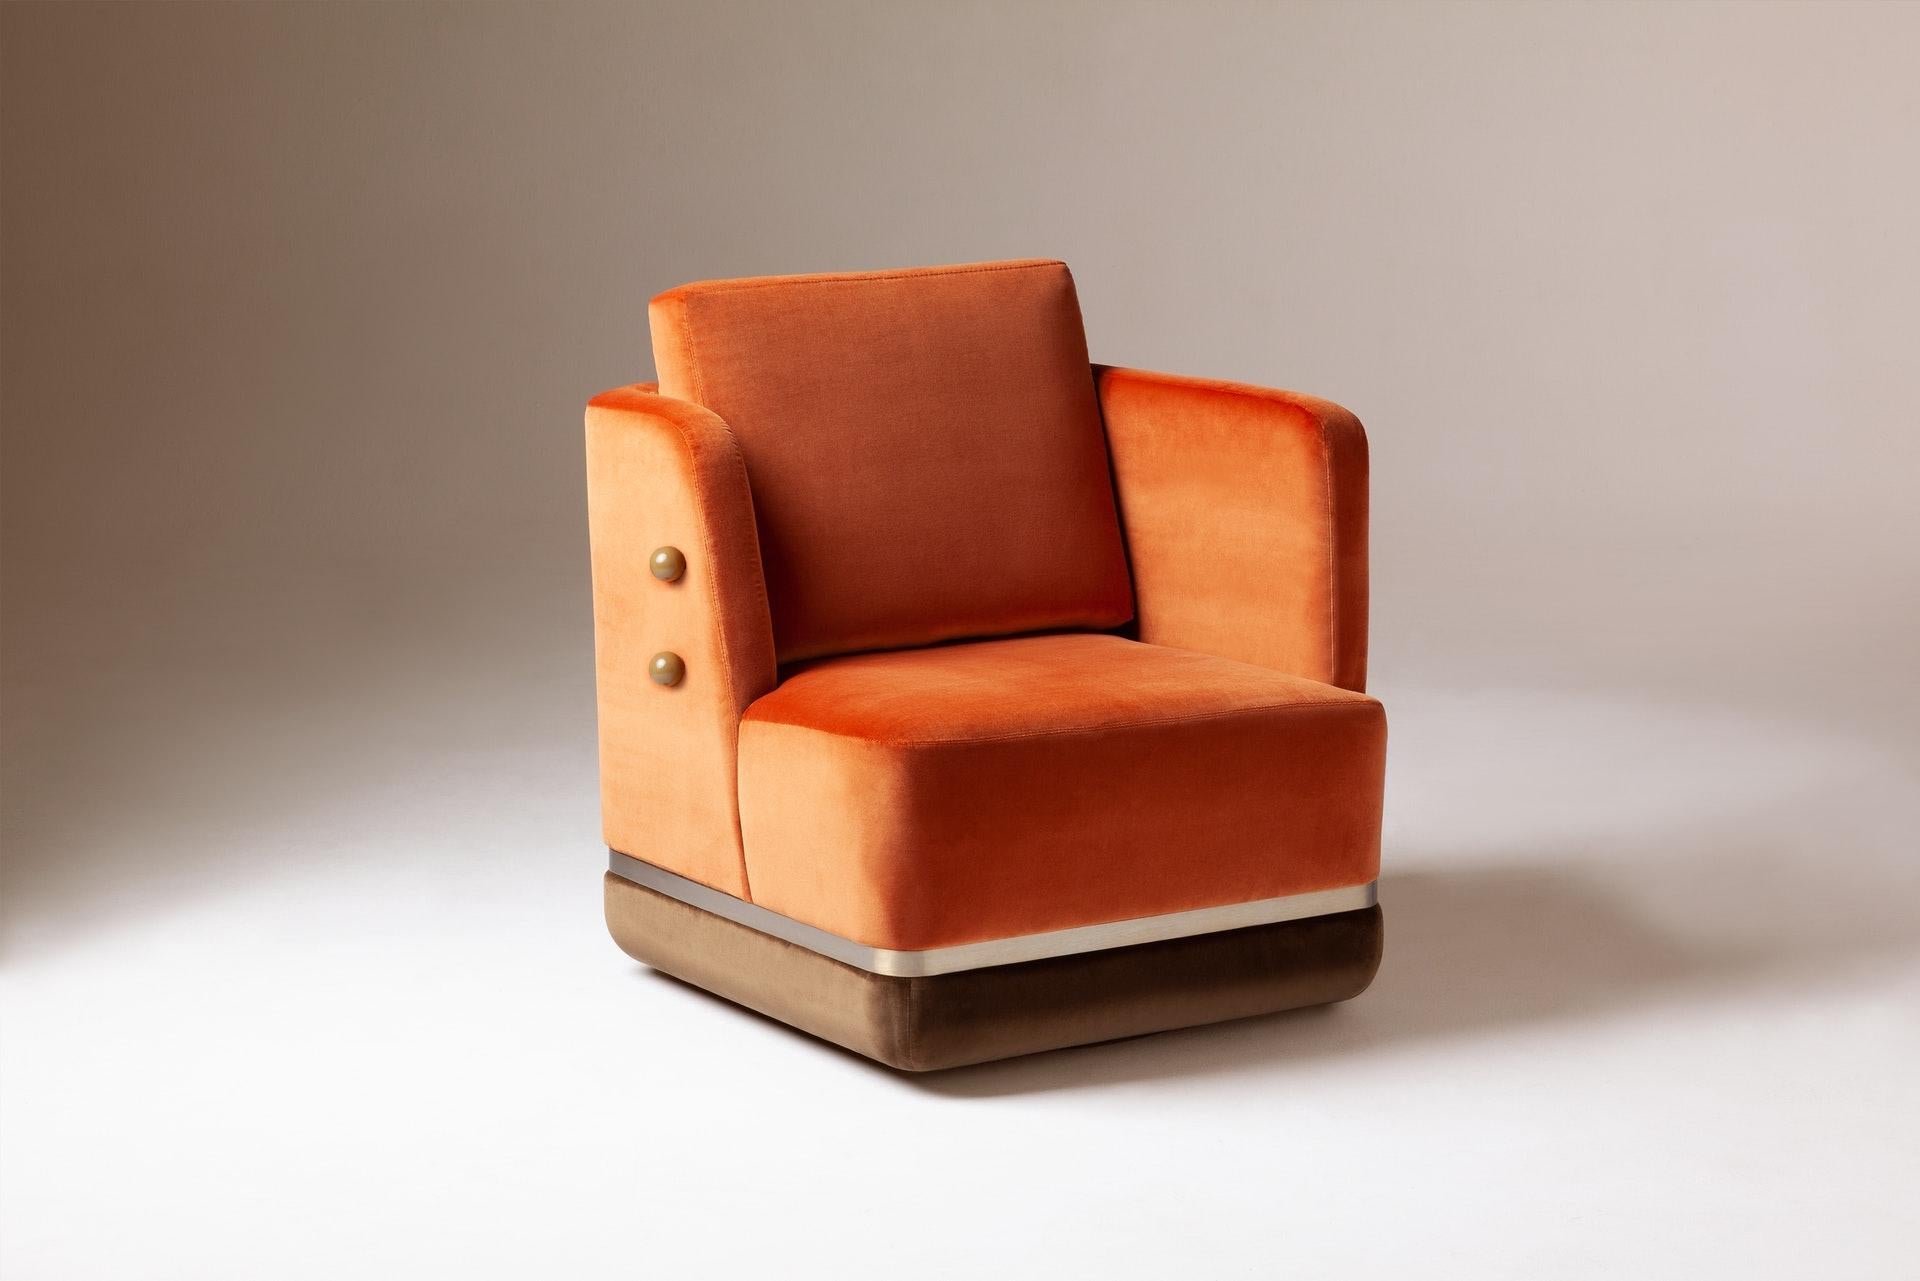 Drehsessel mit weichem orange-braunem Samt aus 100% Baumwolle von Pierre Frey und satinierten Messingdetails. Neu und auf Bestellung gefertigt.

Das portugiesische Designunternehmen DOOQ hat es sich zur Aufgabe gemacht, den Luxus des Wohnens zu